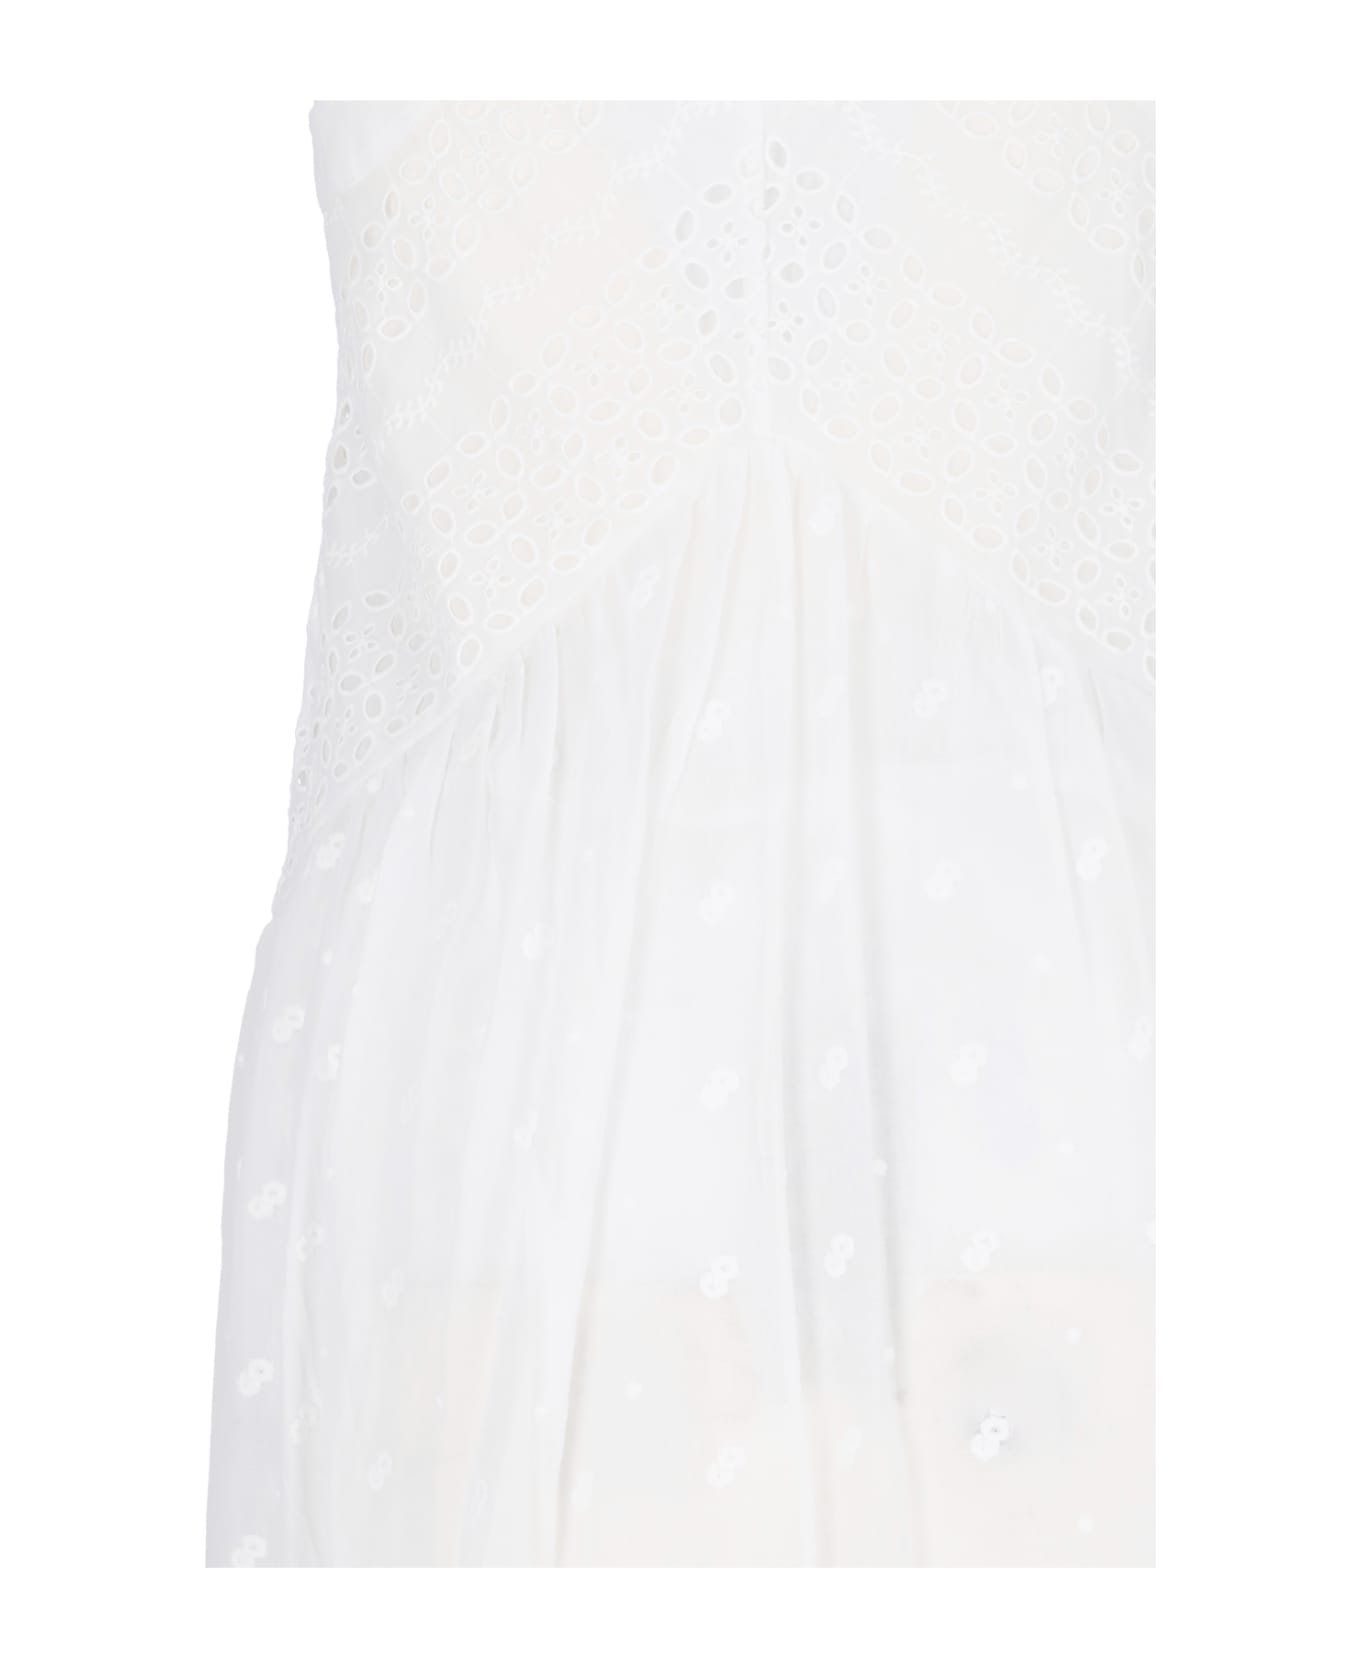 Marant Étoile Maxi Dress In Sangallo - White